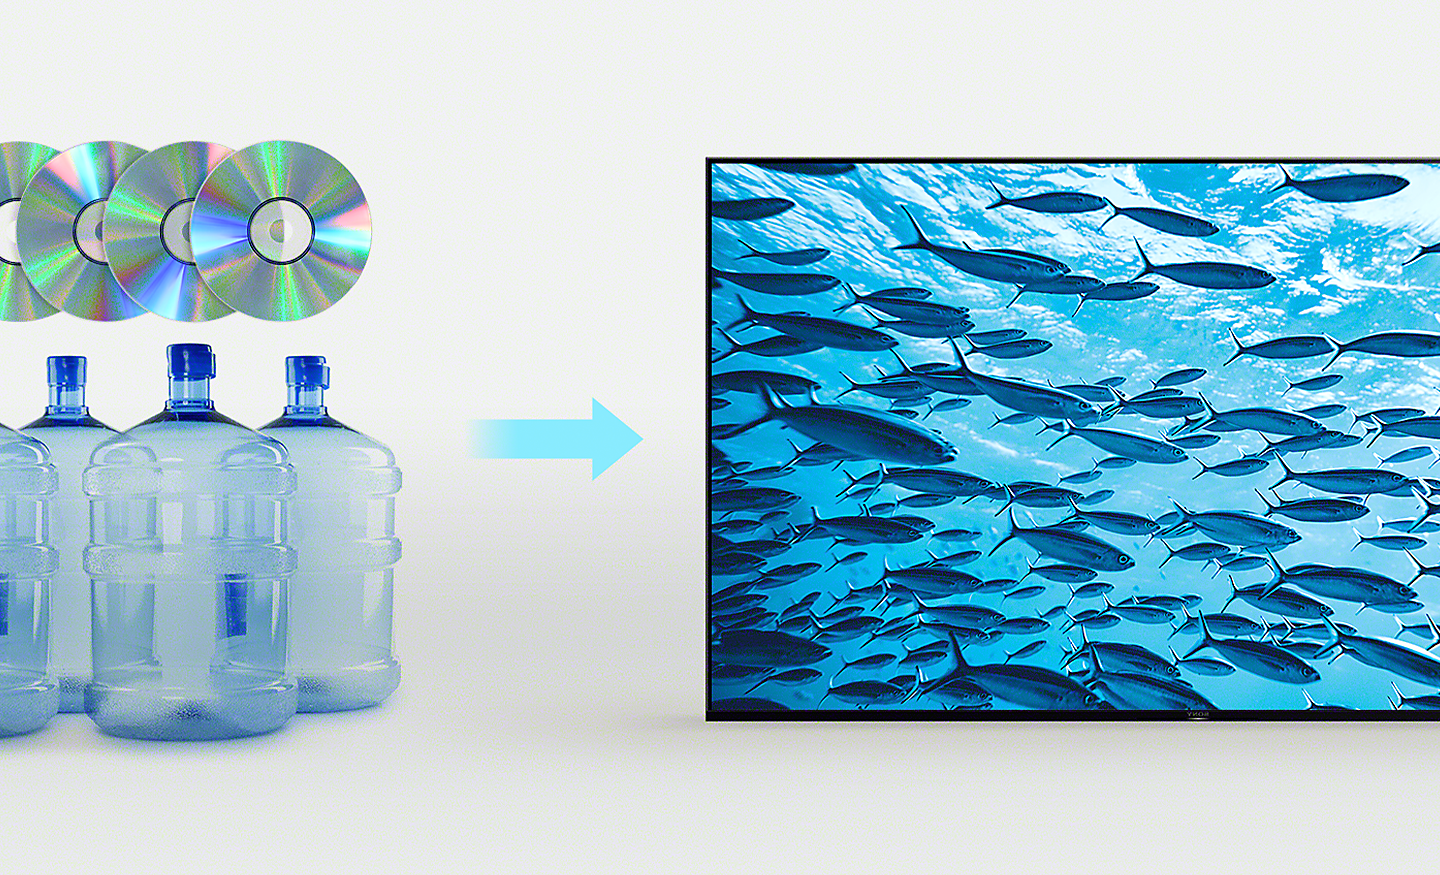 Obrázek čtyř plastových láhví a čtyř kompaktních disků nalevo a šipky ukazující na televizor BRAVIA napravo, na kterém je vidět rybka plovoucí v moři